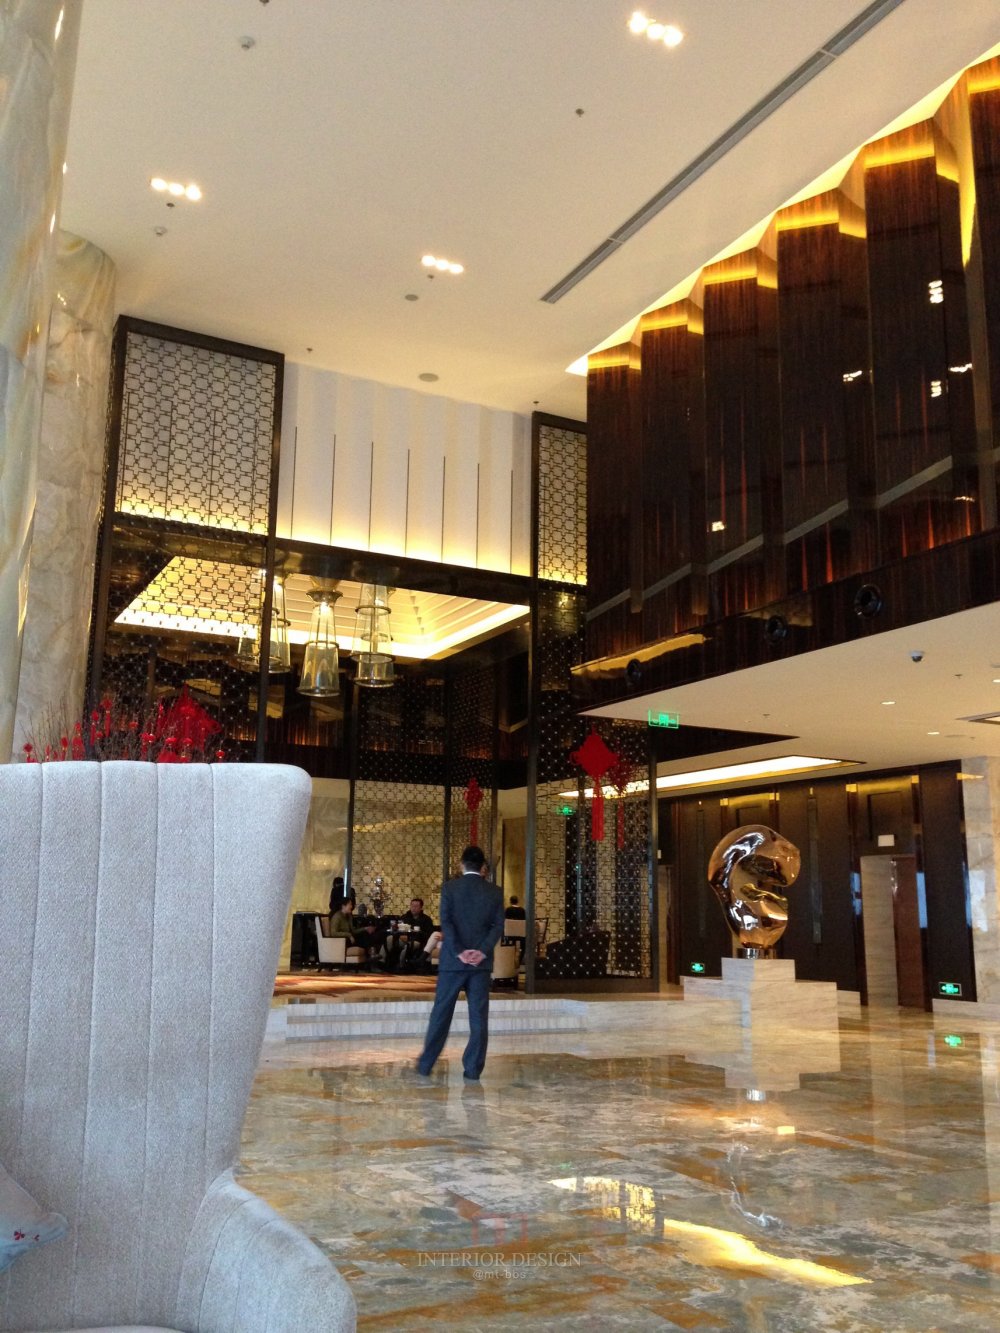 成都丽思卡尔顿酒店The Ritz-Carlton Chengdu(欢迎更新,高分奖励)_IMG_6344.JPG